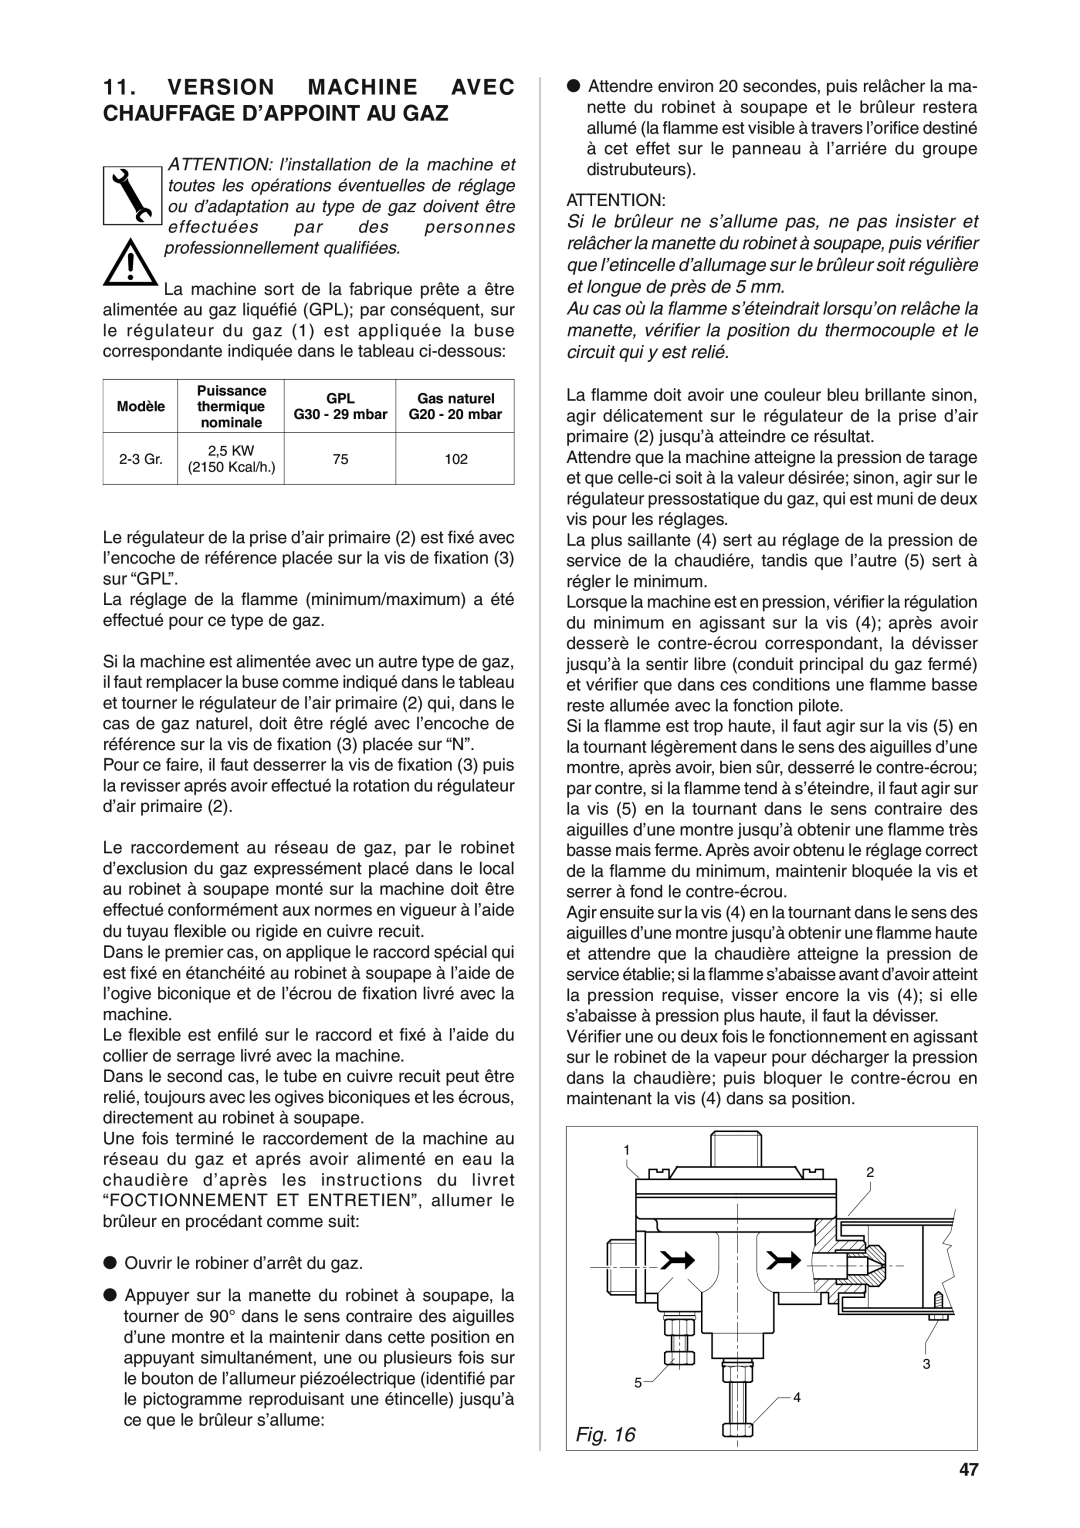 Rancilio S20 manual Version Machine Avec Chauffage D’Appoint Au Gaz 